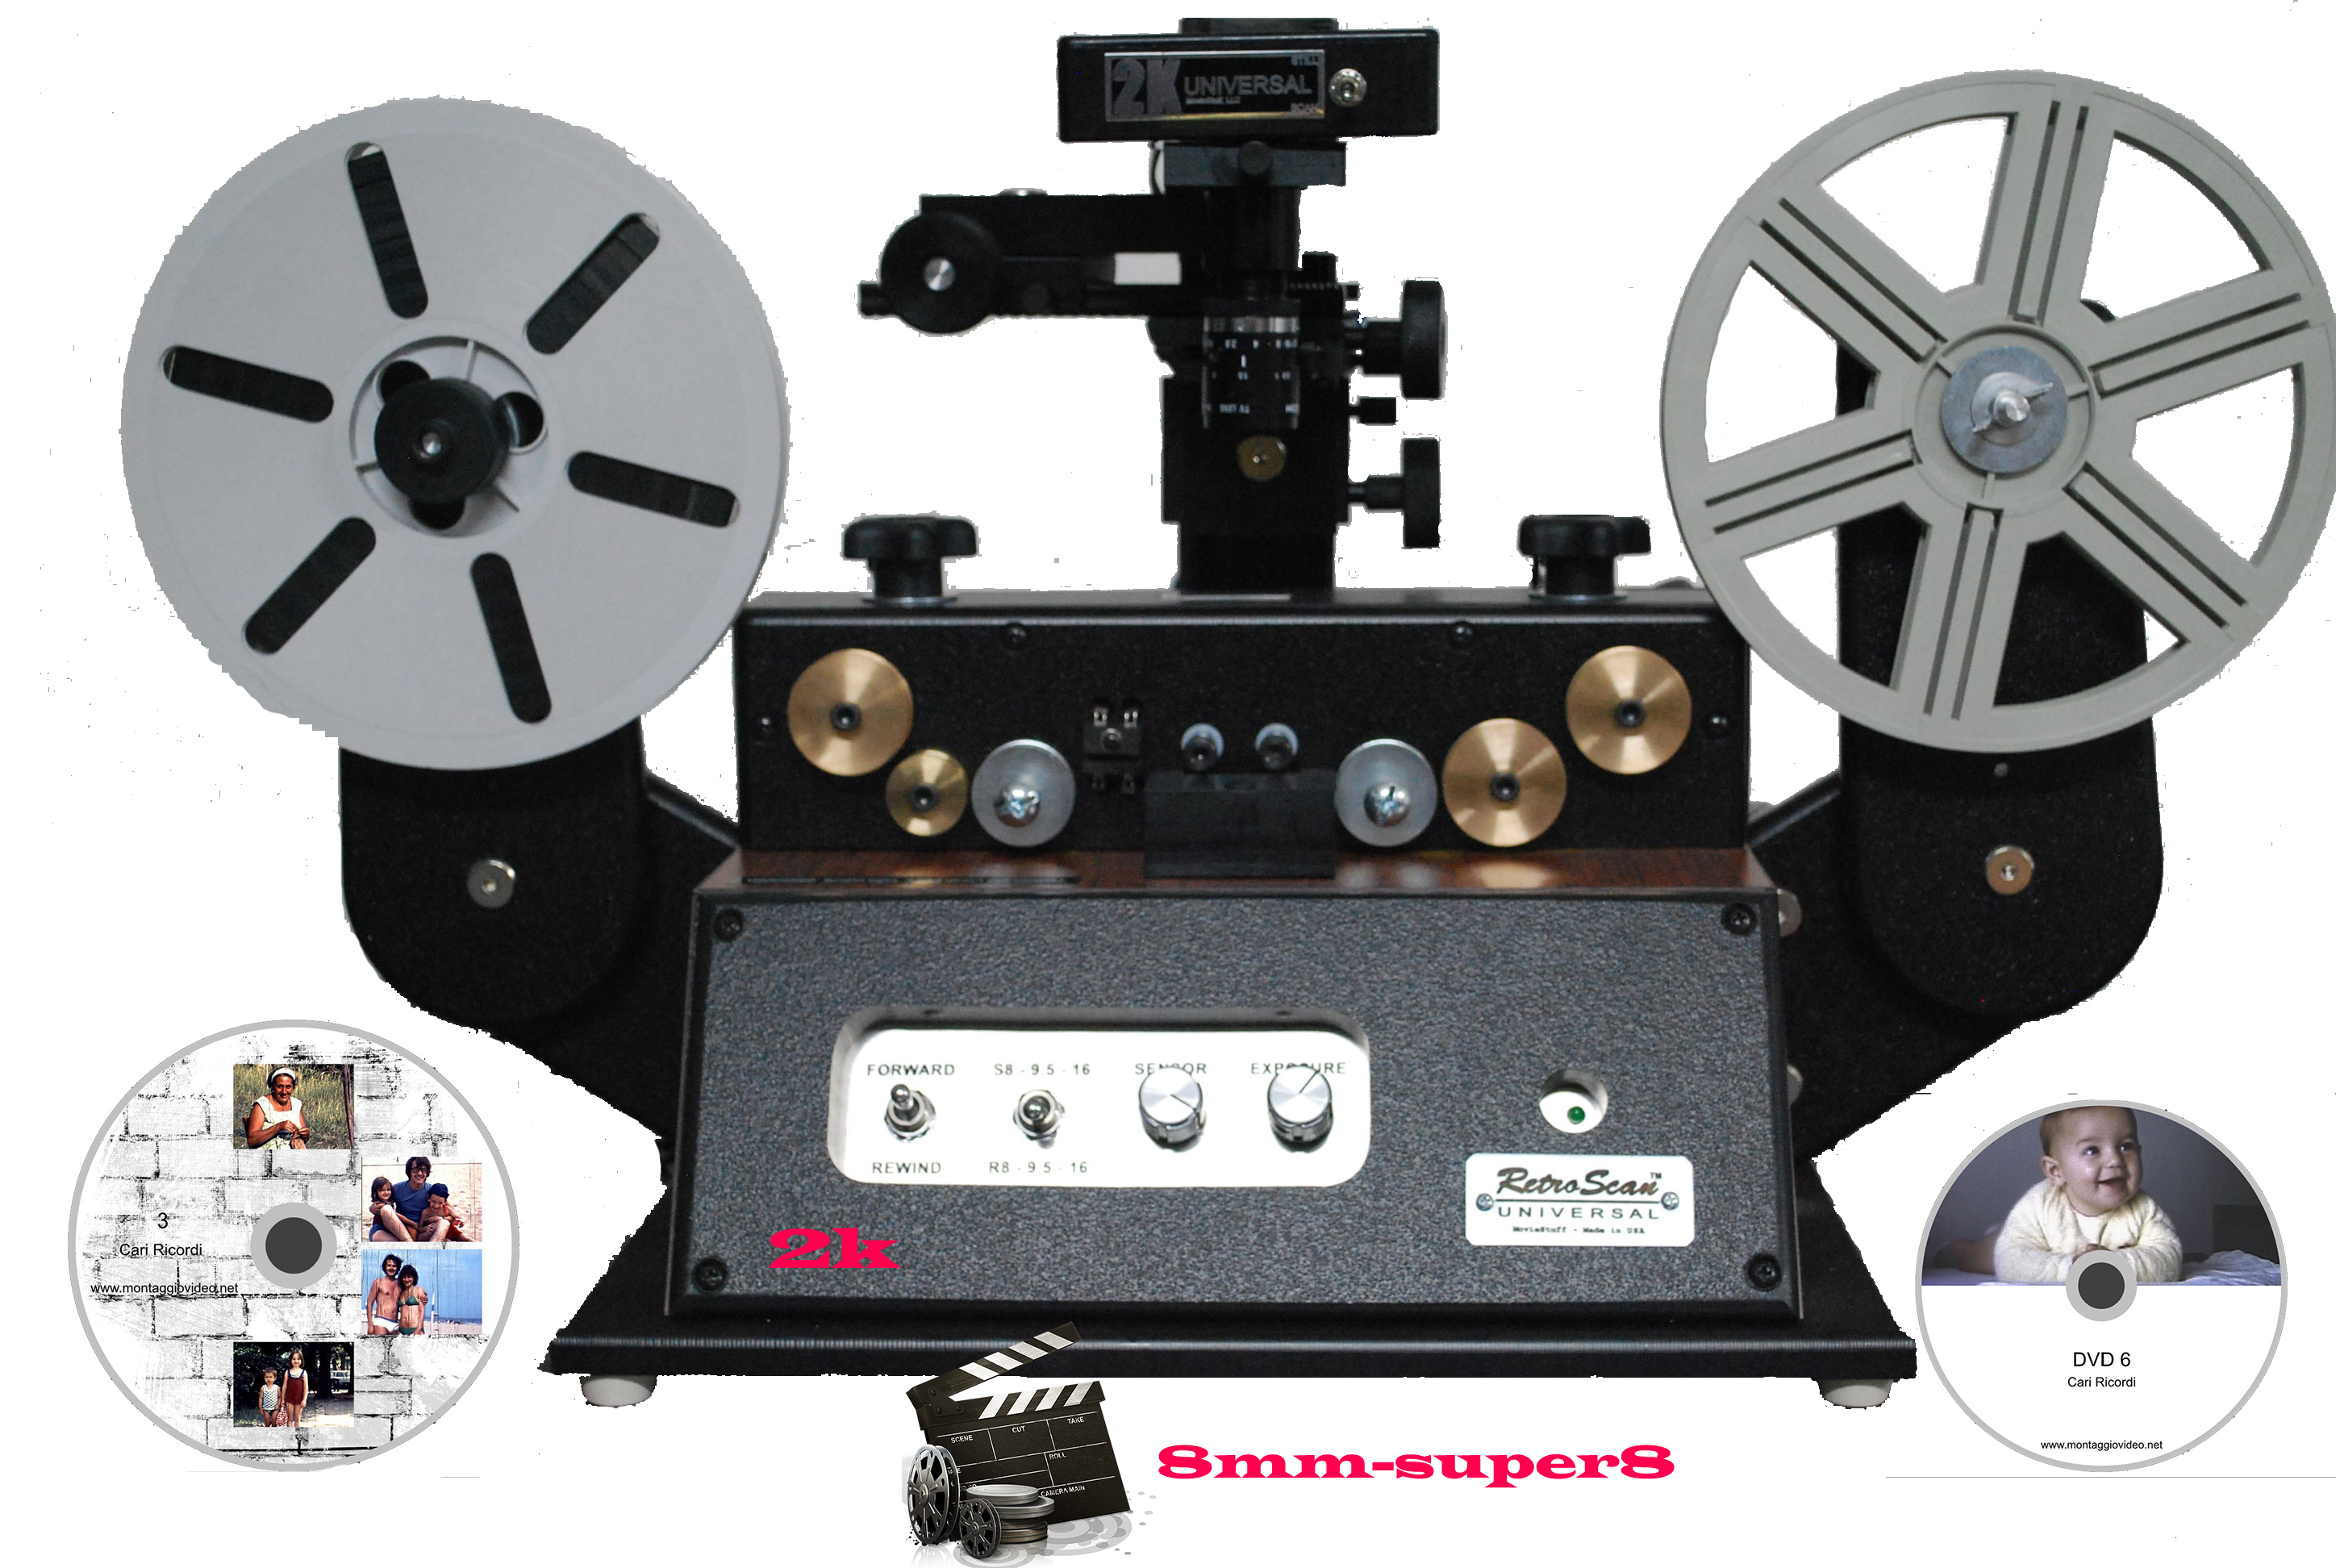 Riversamento video, pellicole “super8 8mm 16 mm” Scanner cinematografico Immagine